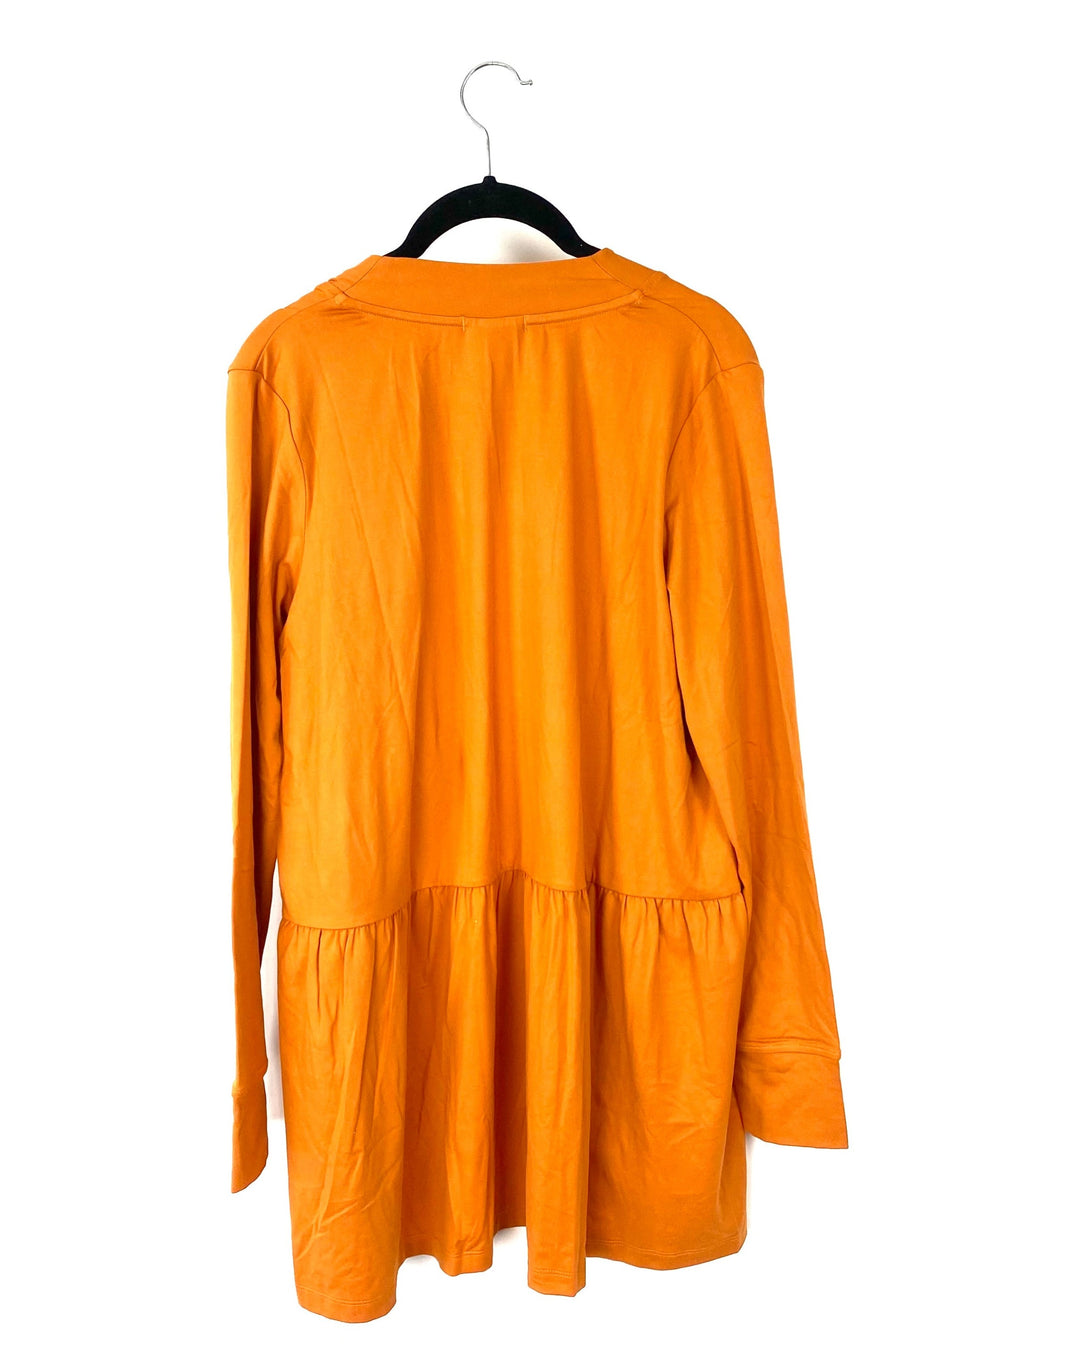 Orange Long Sleeve Cardigan -Size 6/8